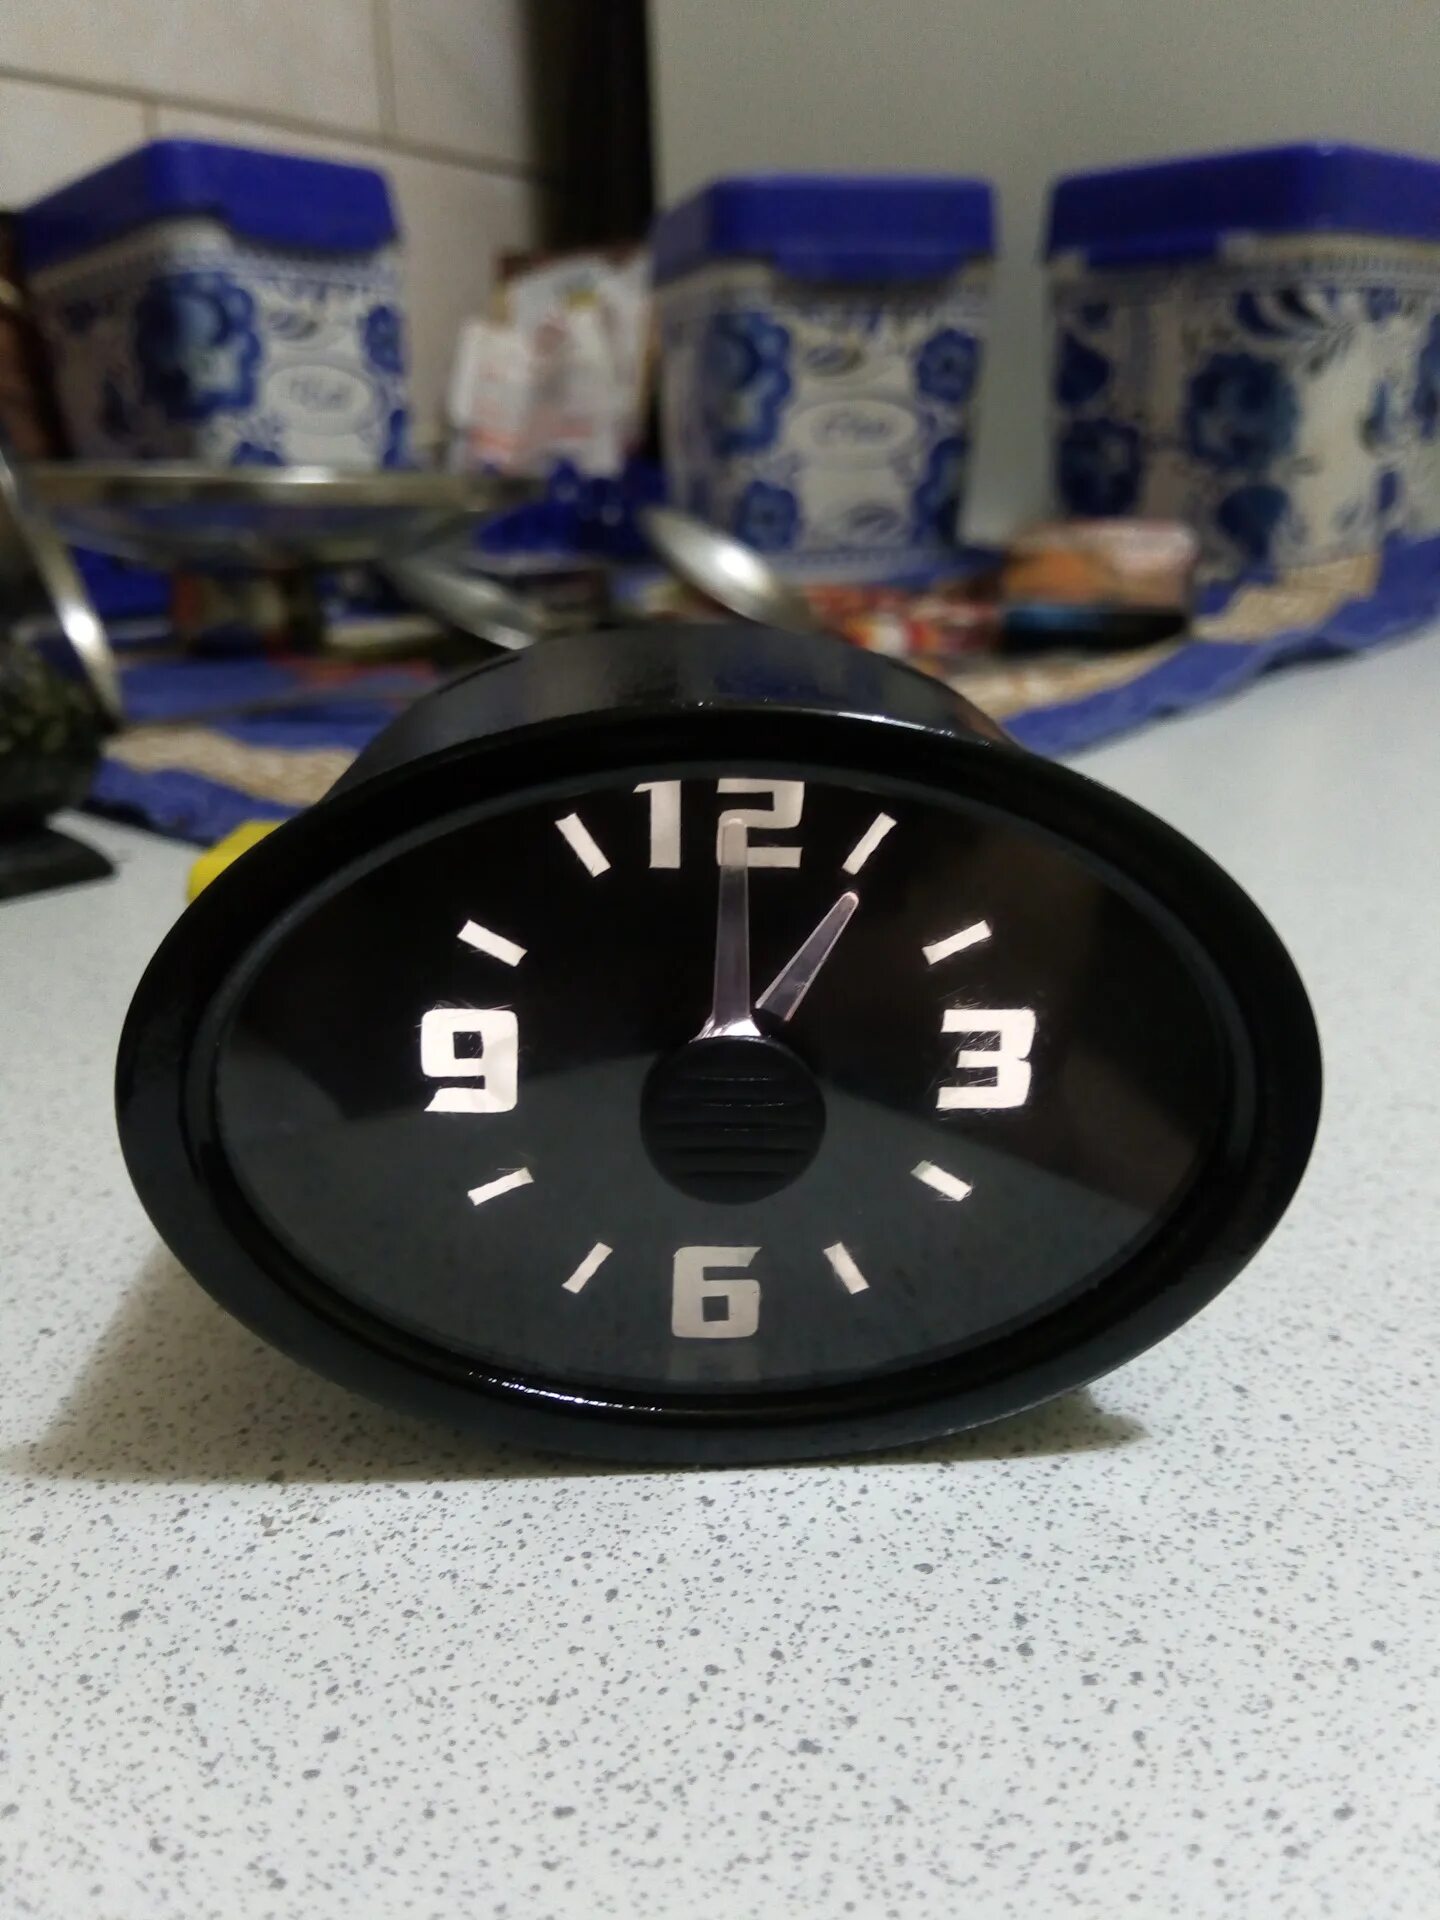 Watch tuning. Штатные часы Приора 1. Электронные часы Приора 1.